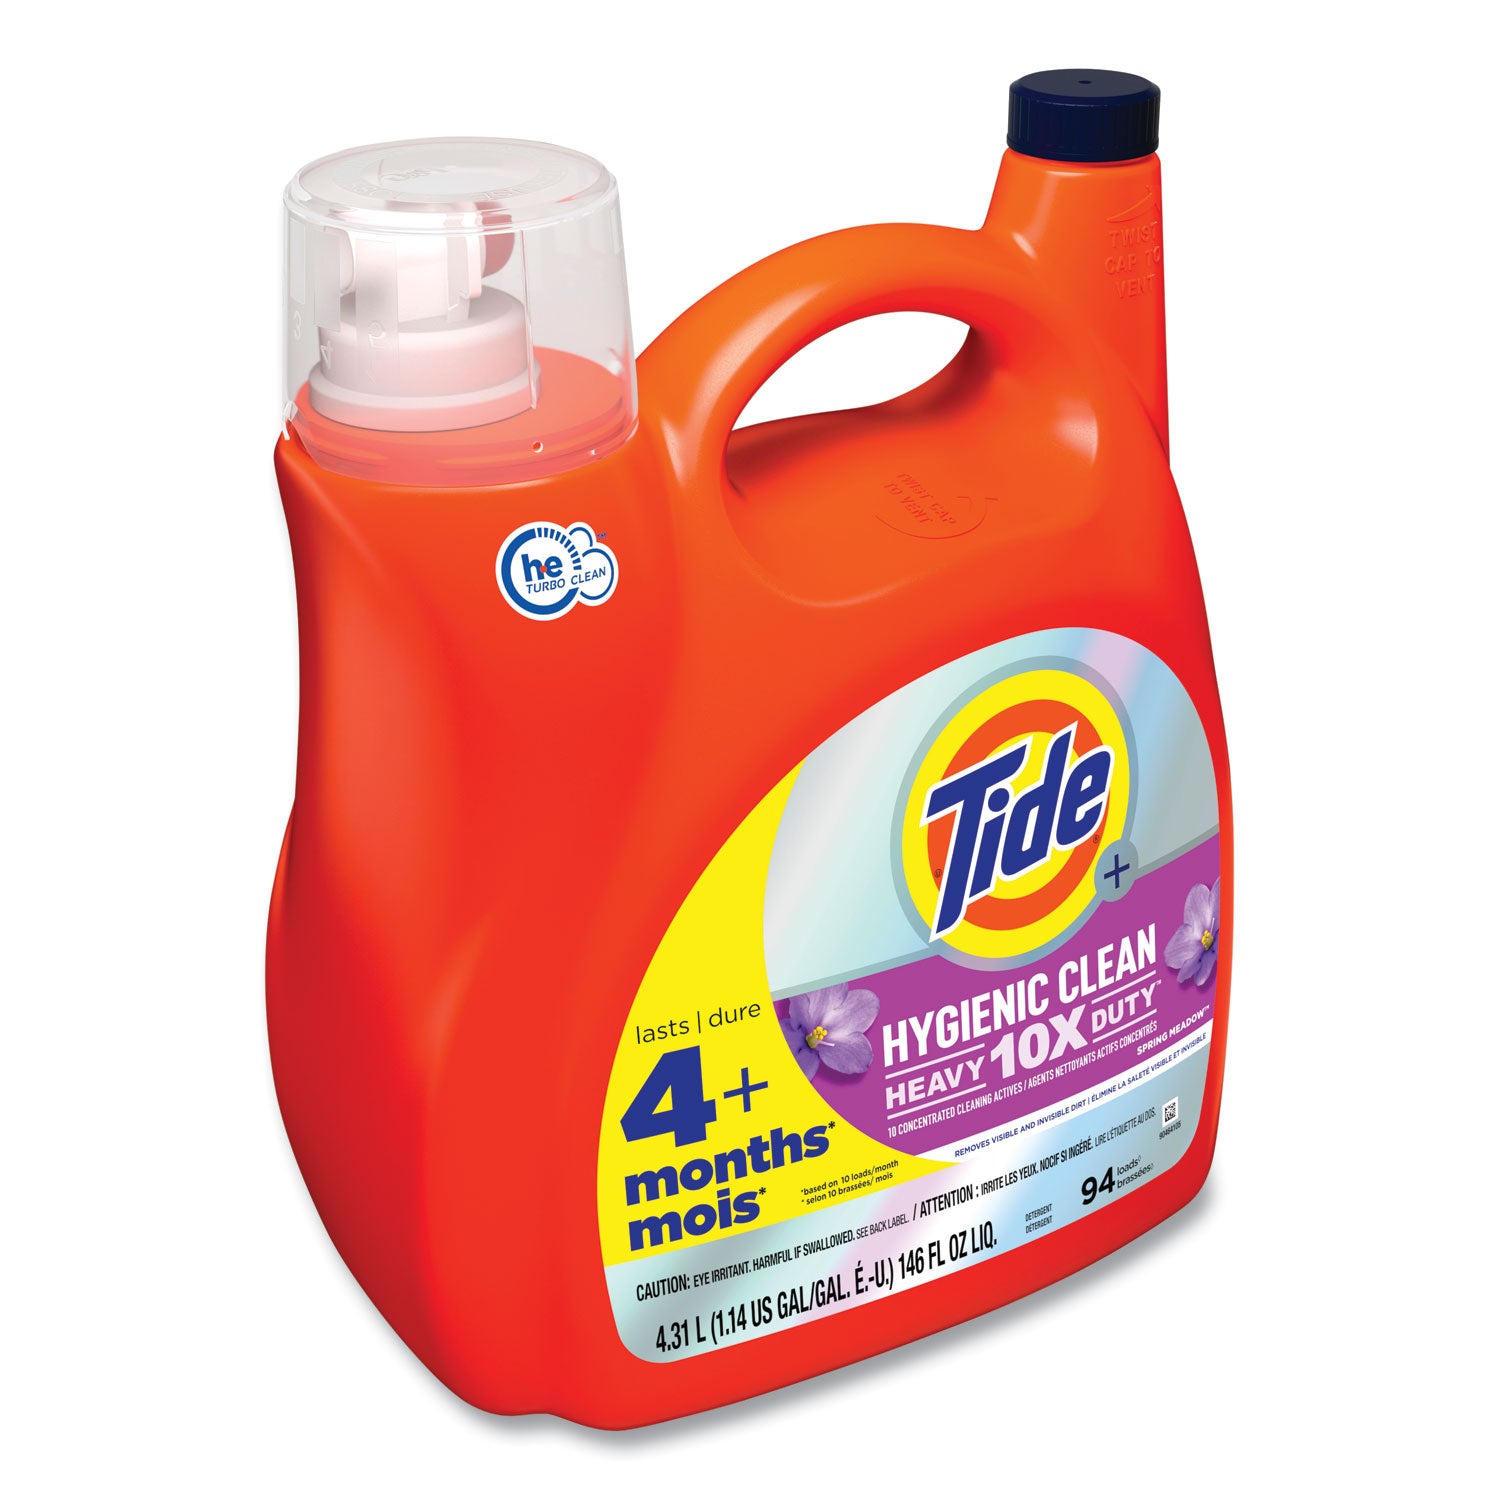 hygienic-clean-heavy-10x-duty-liquid-laundry-detergent-spring-meadow-scent-146-oz-pour-bottle-4-carton_pgc09449 - 3